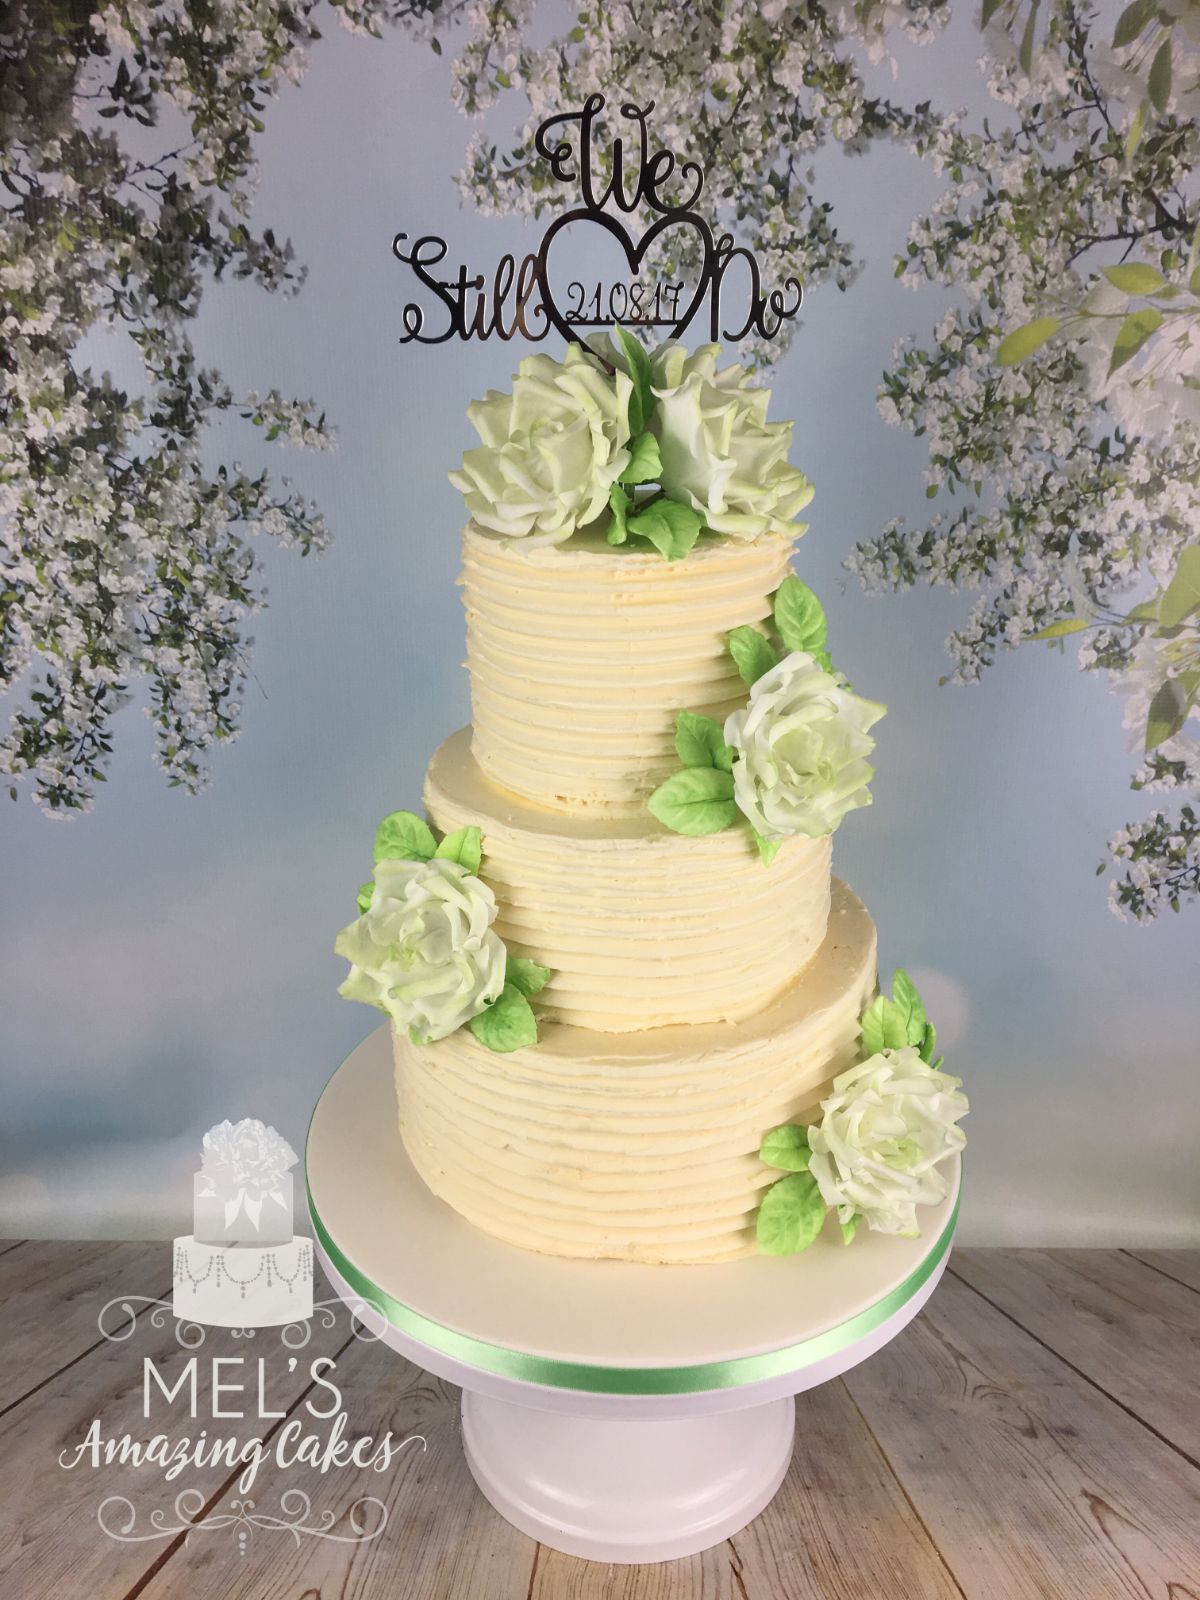 Mel's Amazing Cakes-Image-12